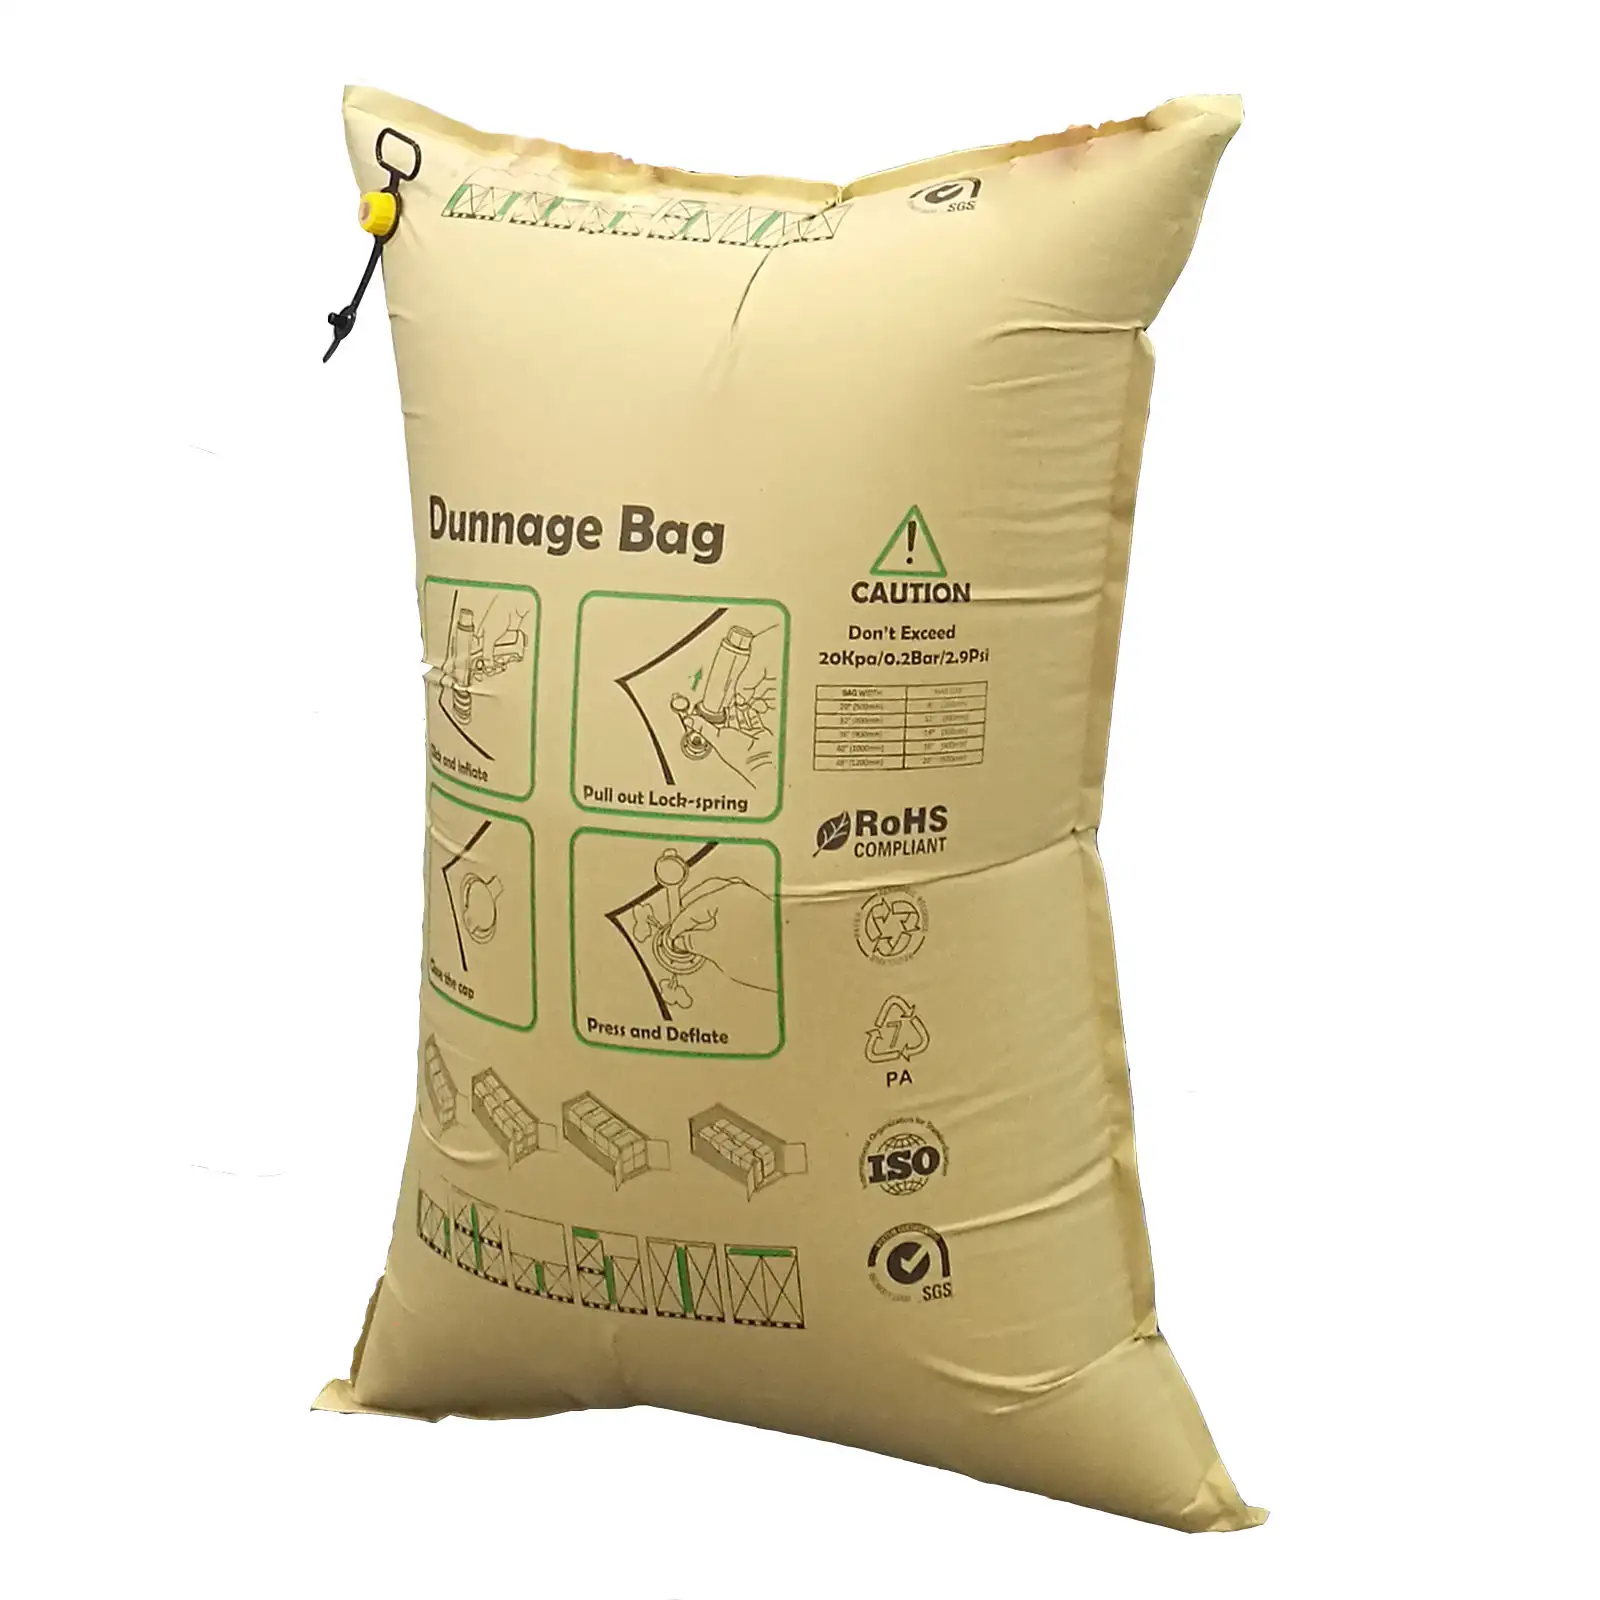 Les sacs gonflables pour la sécurité de la cargaison sont utilisés dans le transport de marchandises pour combler les lacunes et réduire l'usure